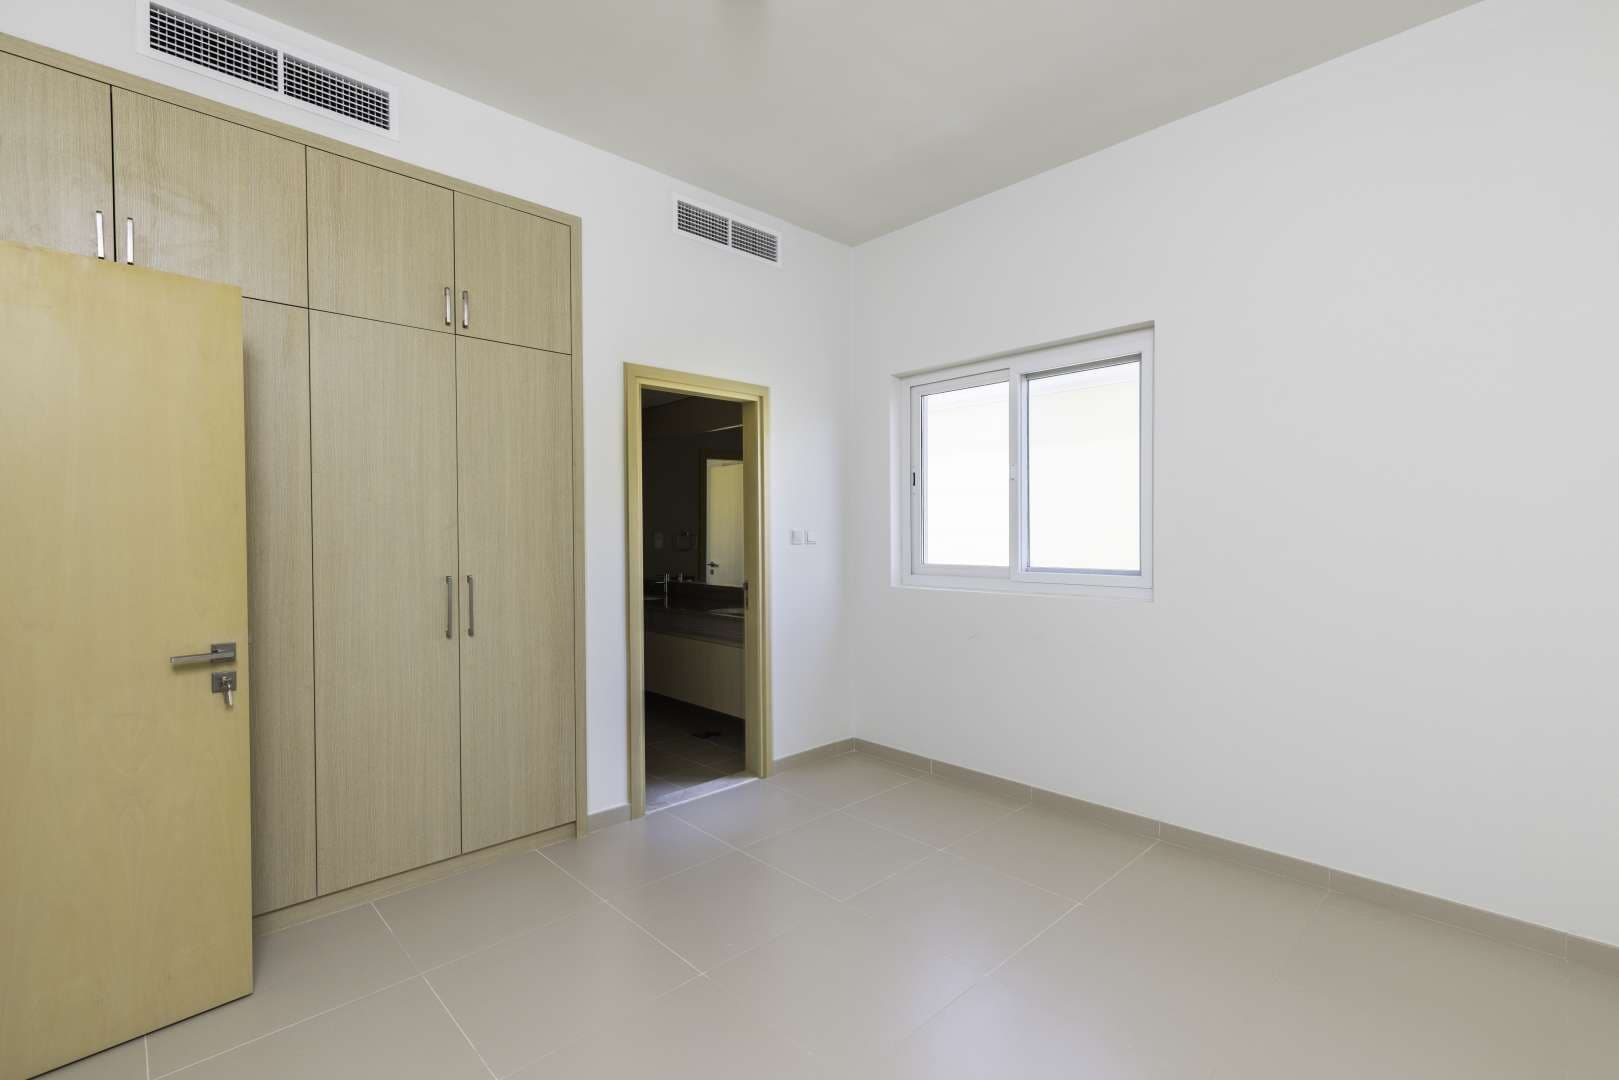 4 Bedroom Villa For Rent La Quinta Lp10469 2b53f3fb92783c00.jpg